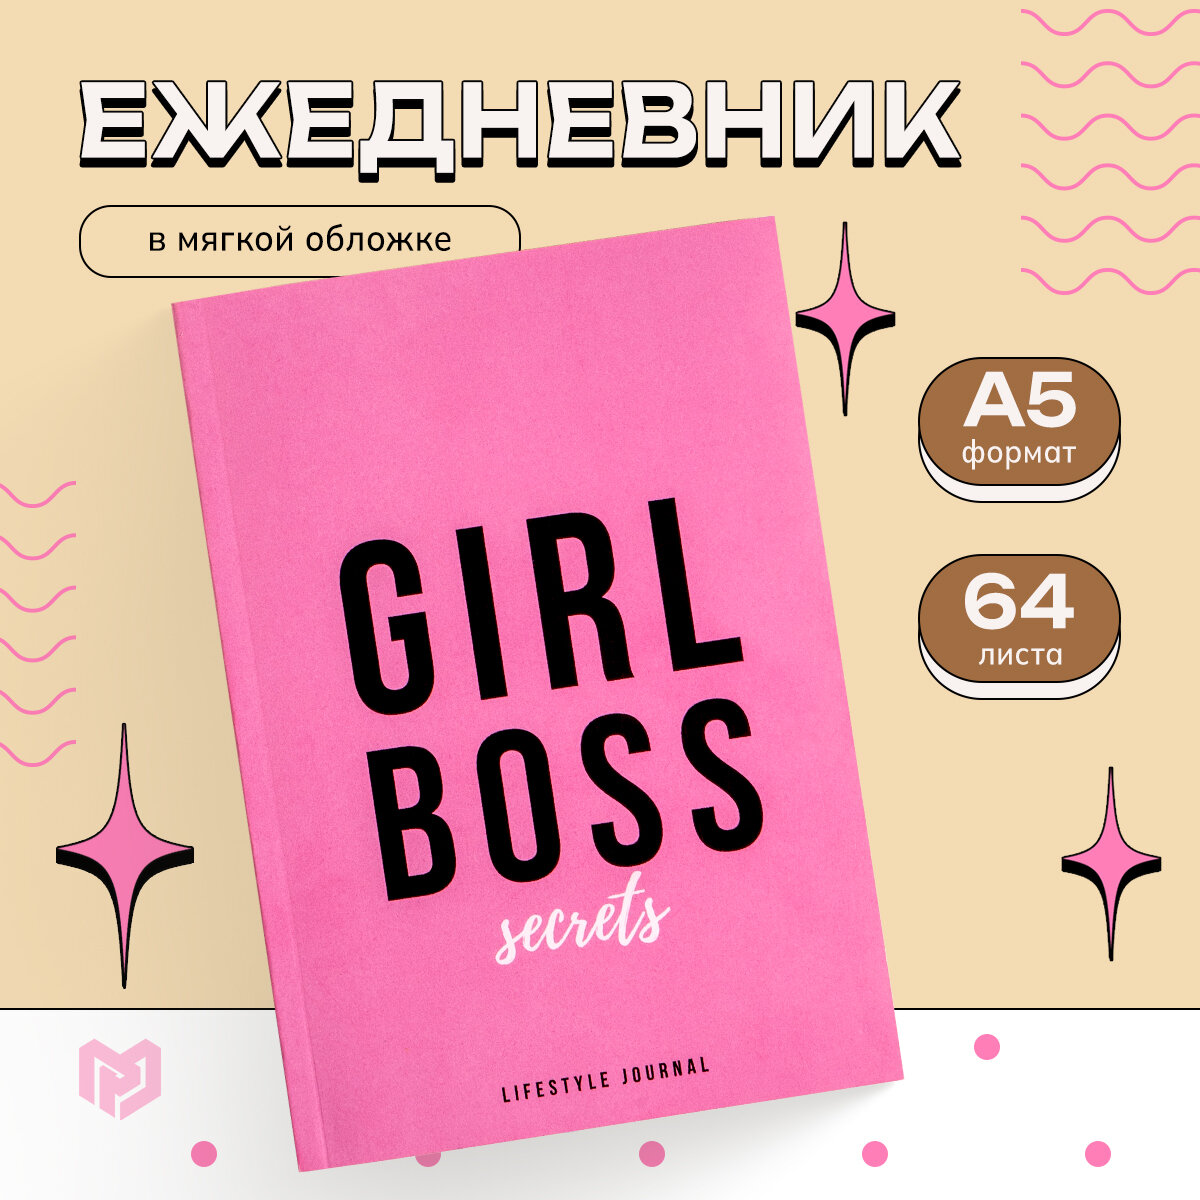 Ежедневник в точку "Girl Boss" А5, 64 листа / 8 марта / Подарок